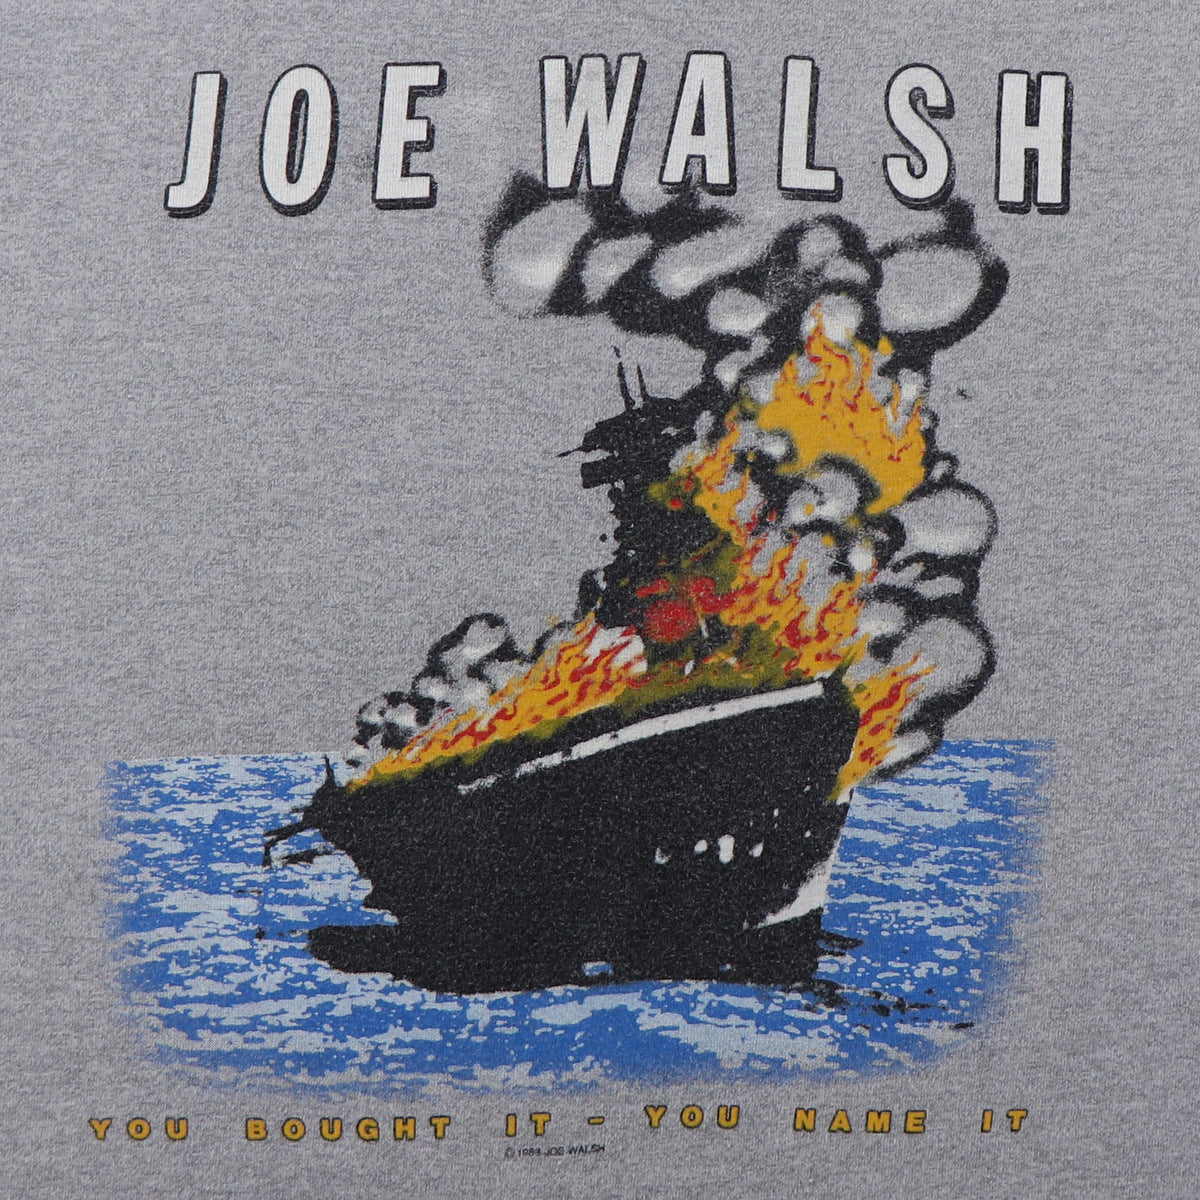 1983 Joe Walsh You Bought It You Wear It Tour Shirt